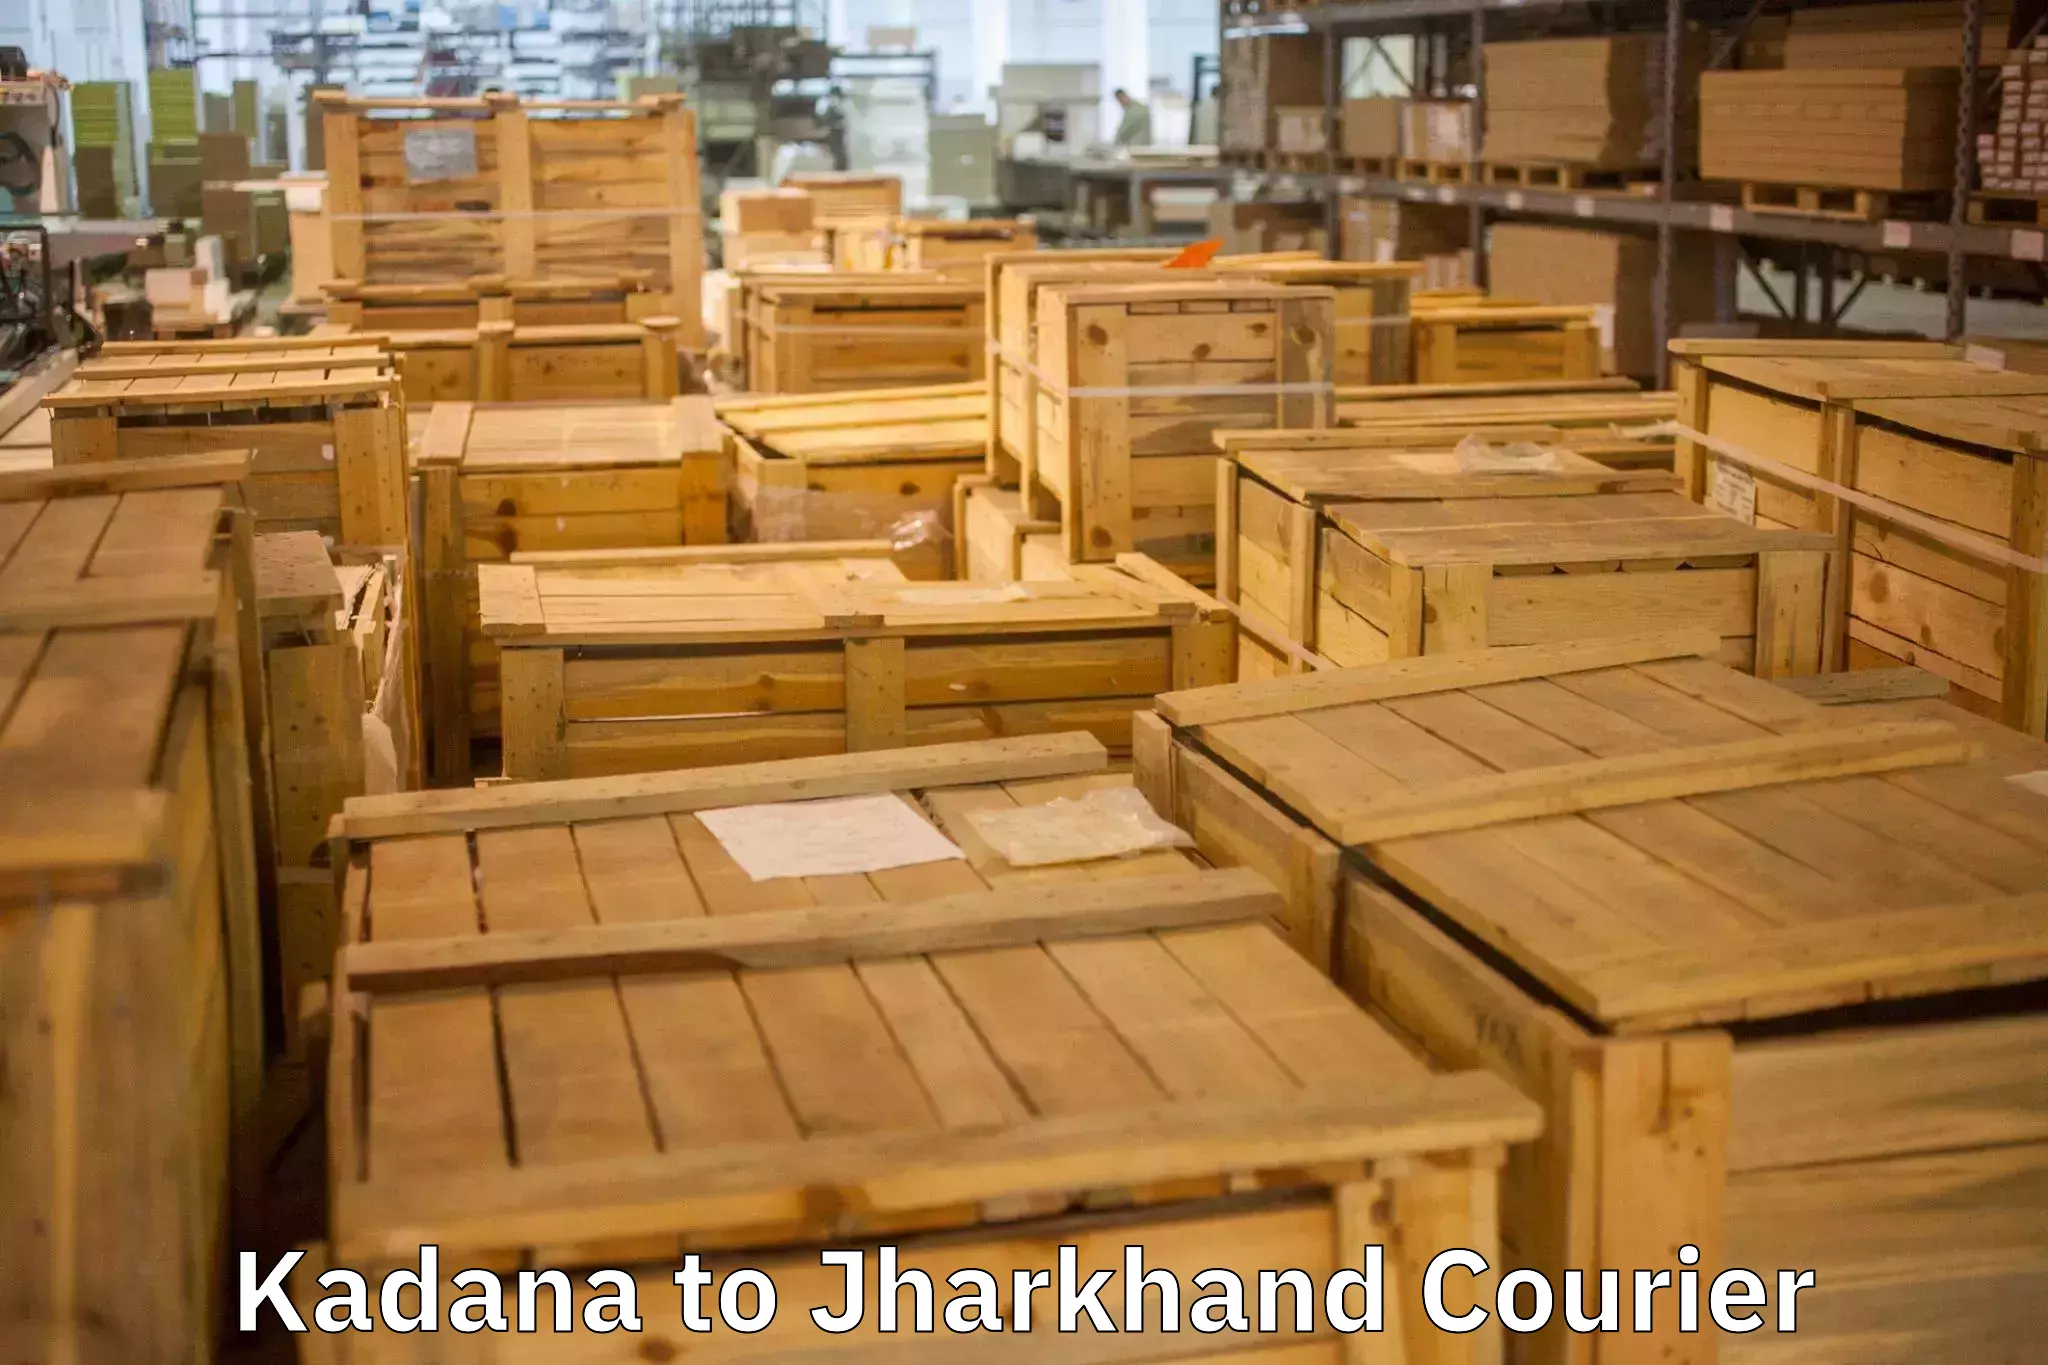 Trusted furniture movers Kadana to Latehar